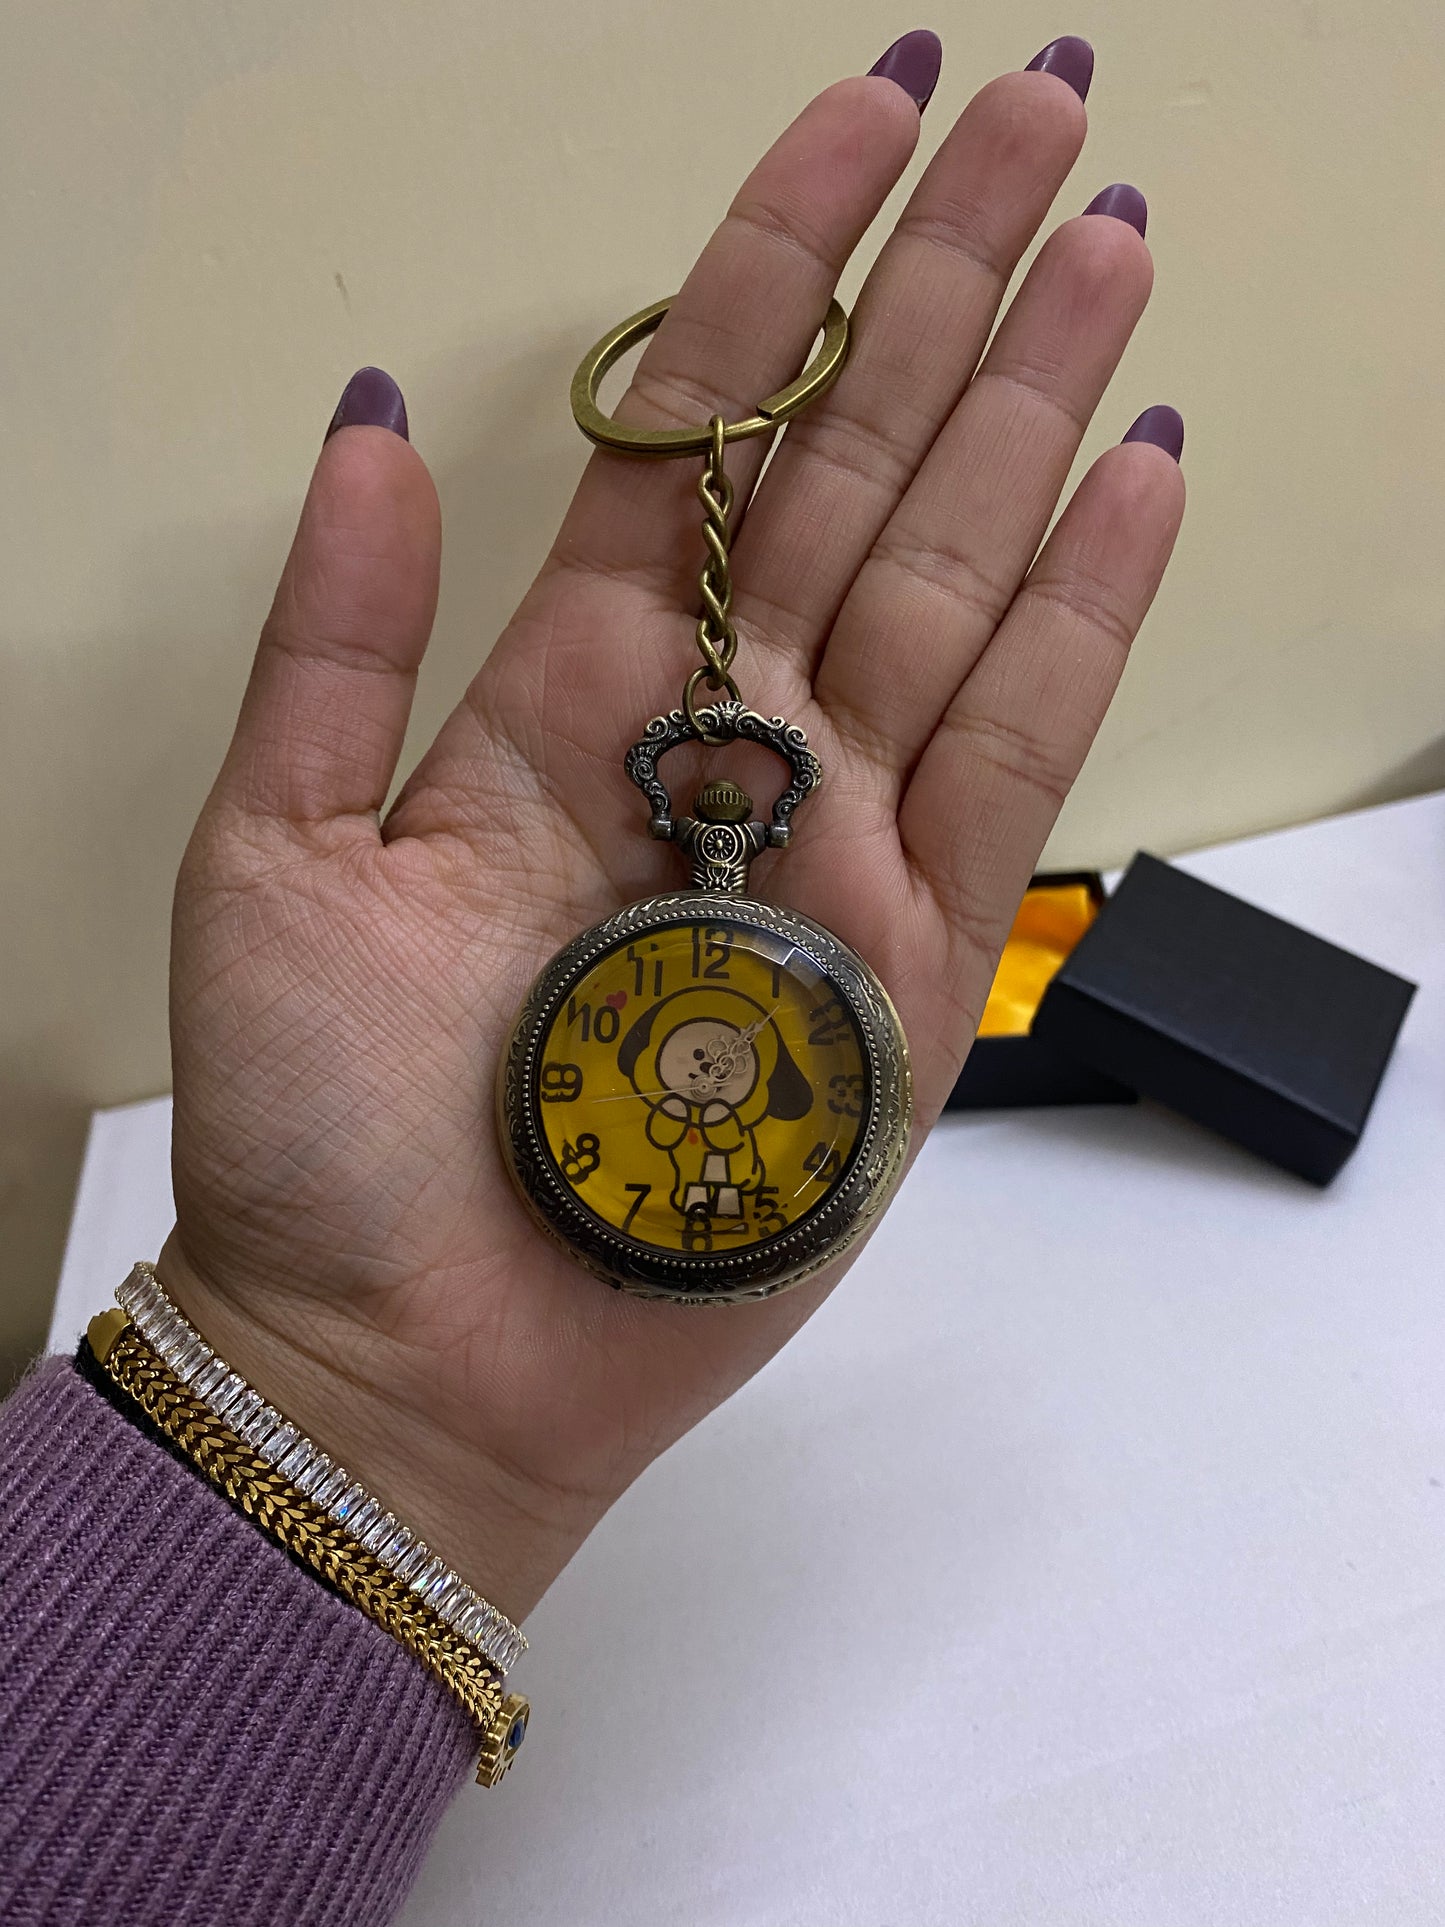 Bts yellow  antique watch keychain